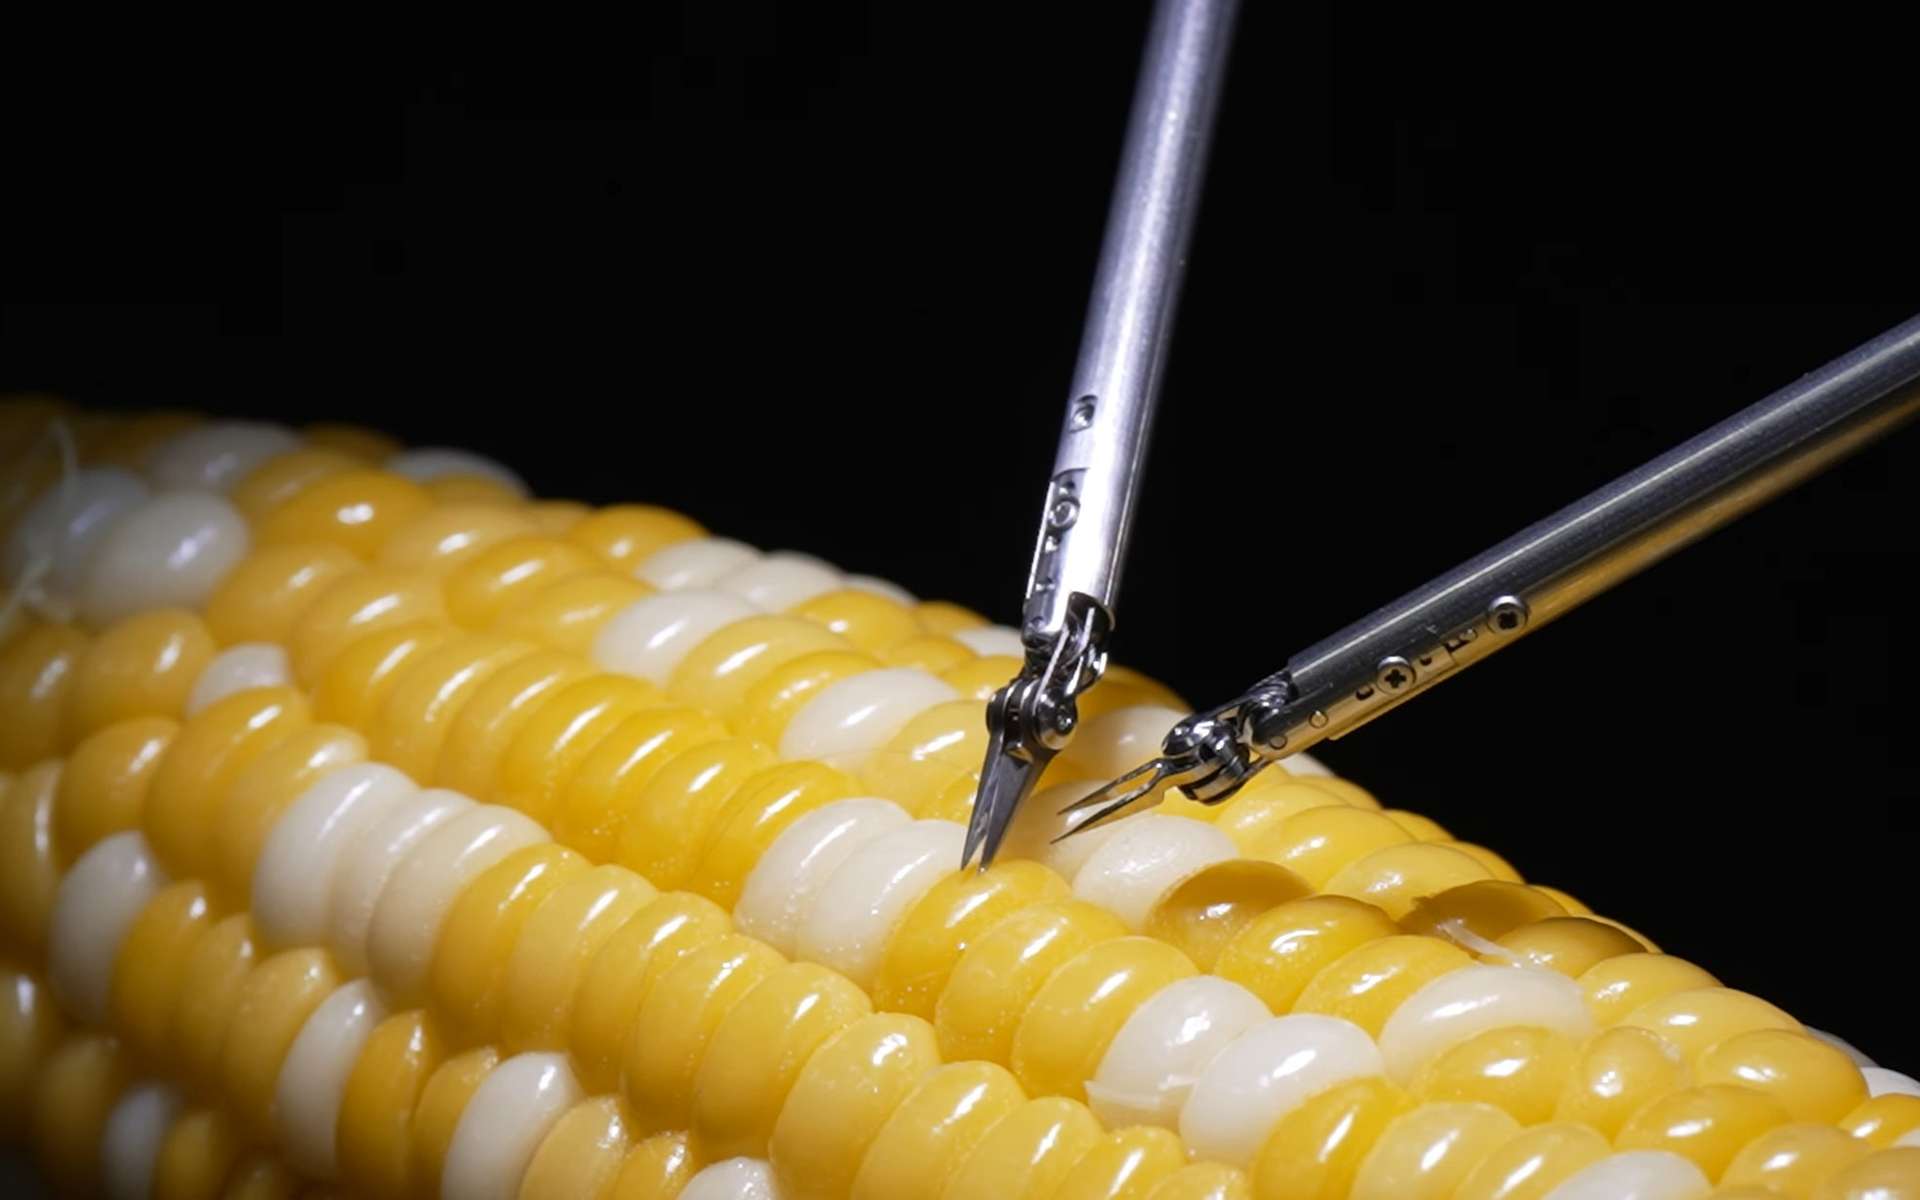 Sony dévoile un robot-chirurgien capable de recoudre une incision dans un grain de maïs !